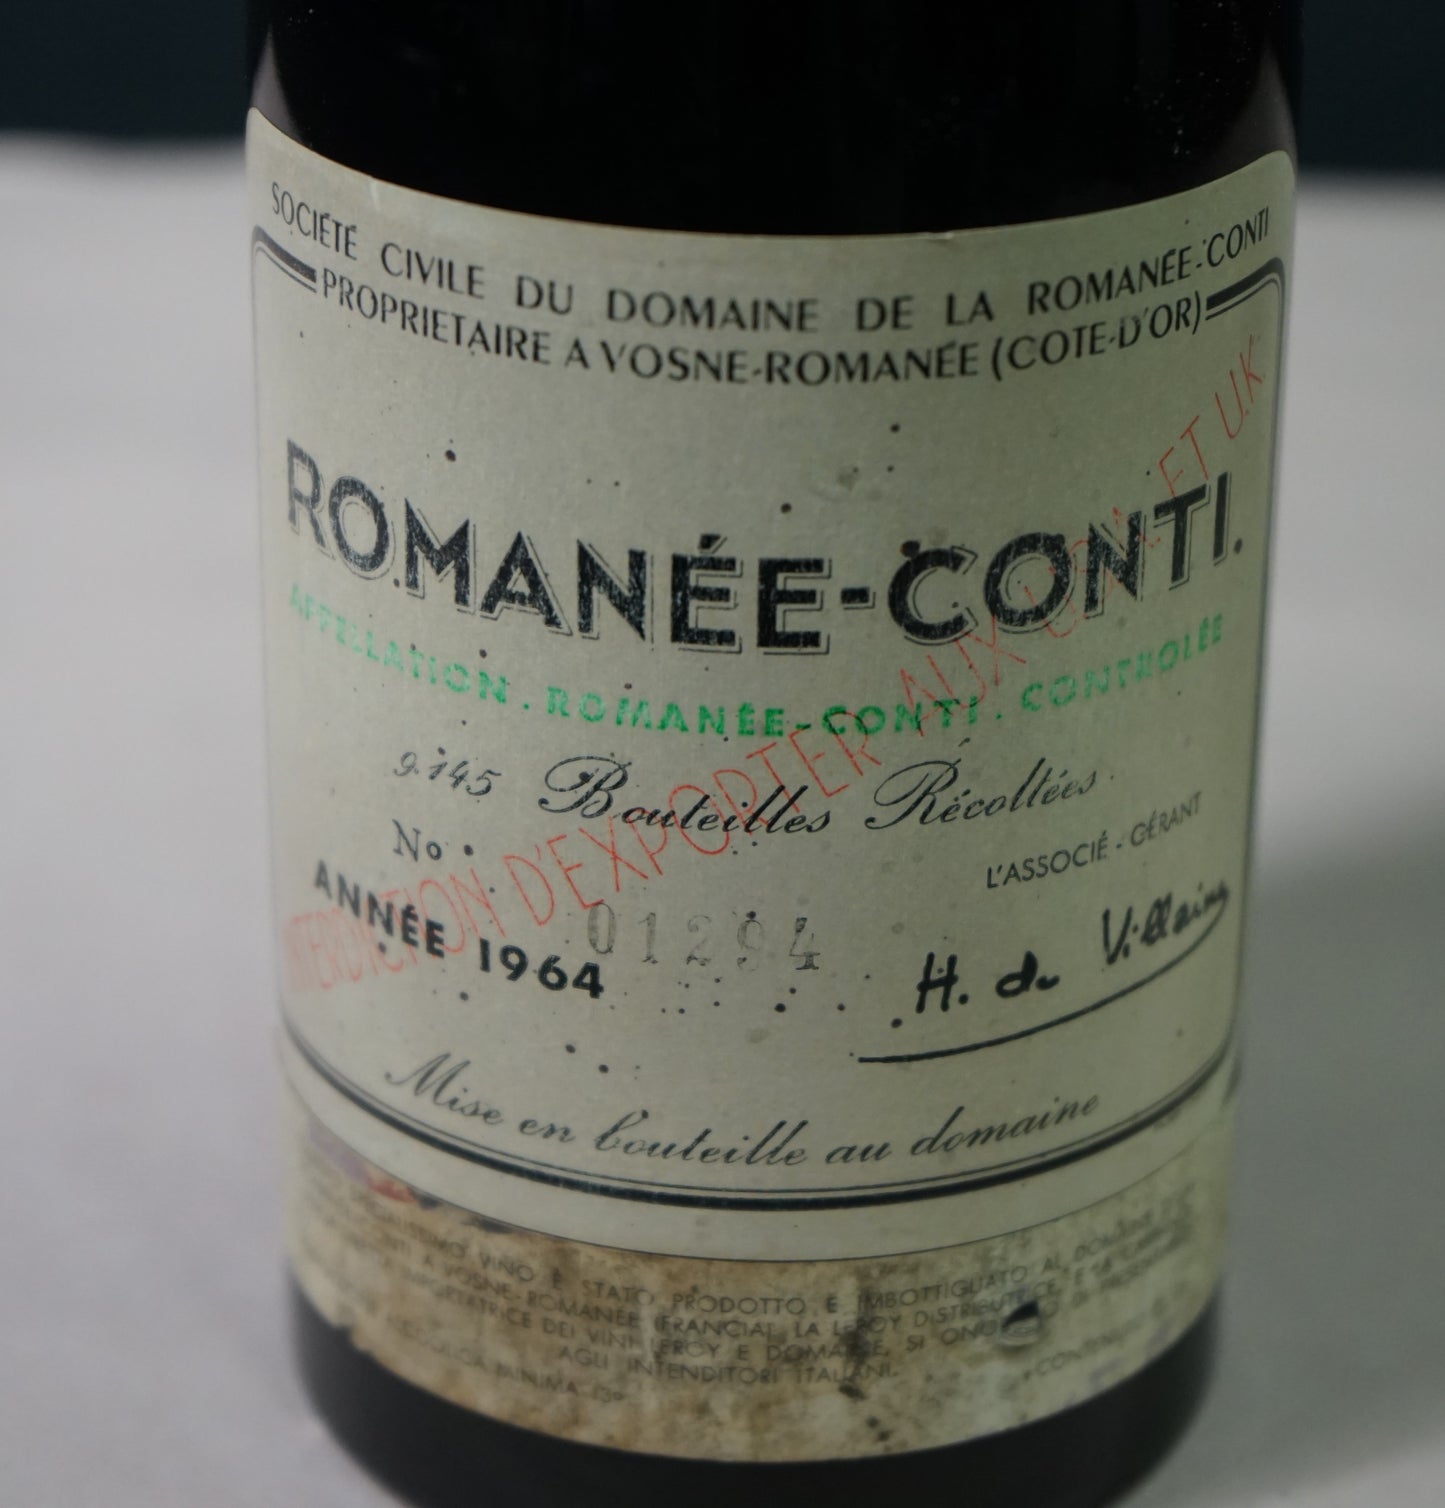 ロマネ・コンティ,ドメーヌ・ド・ラ・ロマネコンティ[1964] Romanee-Conti, Domaine de la Romanee-Conti